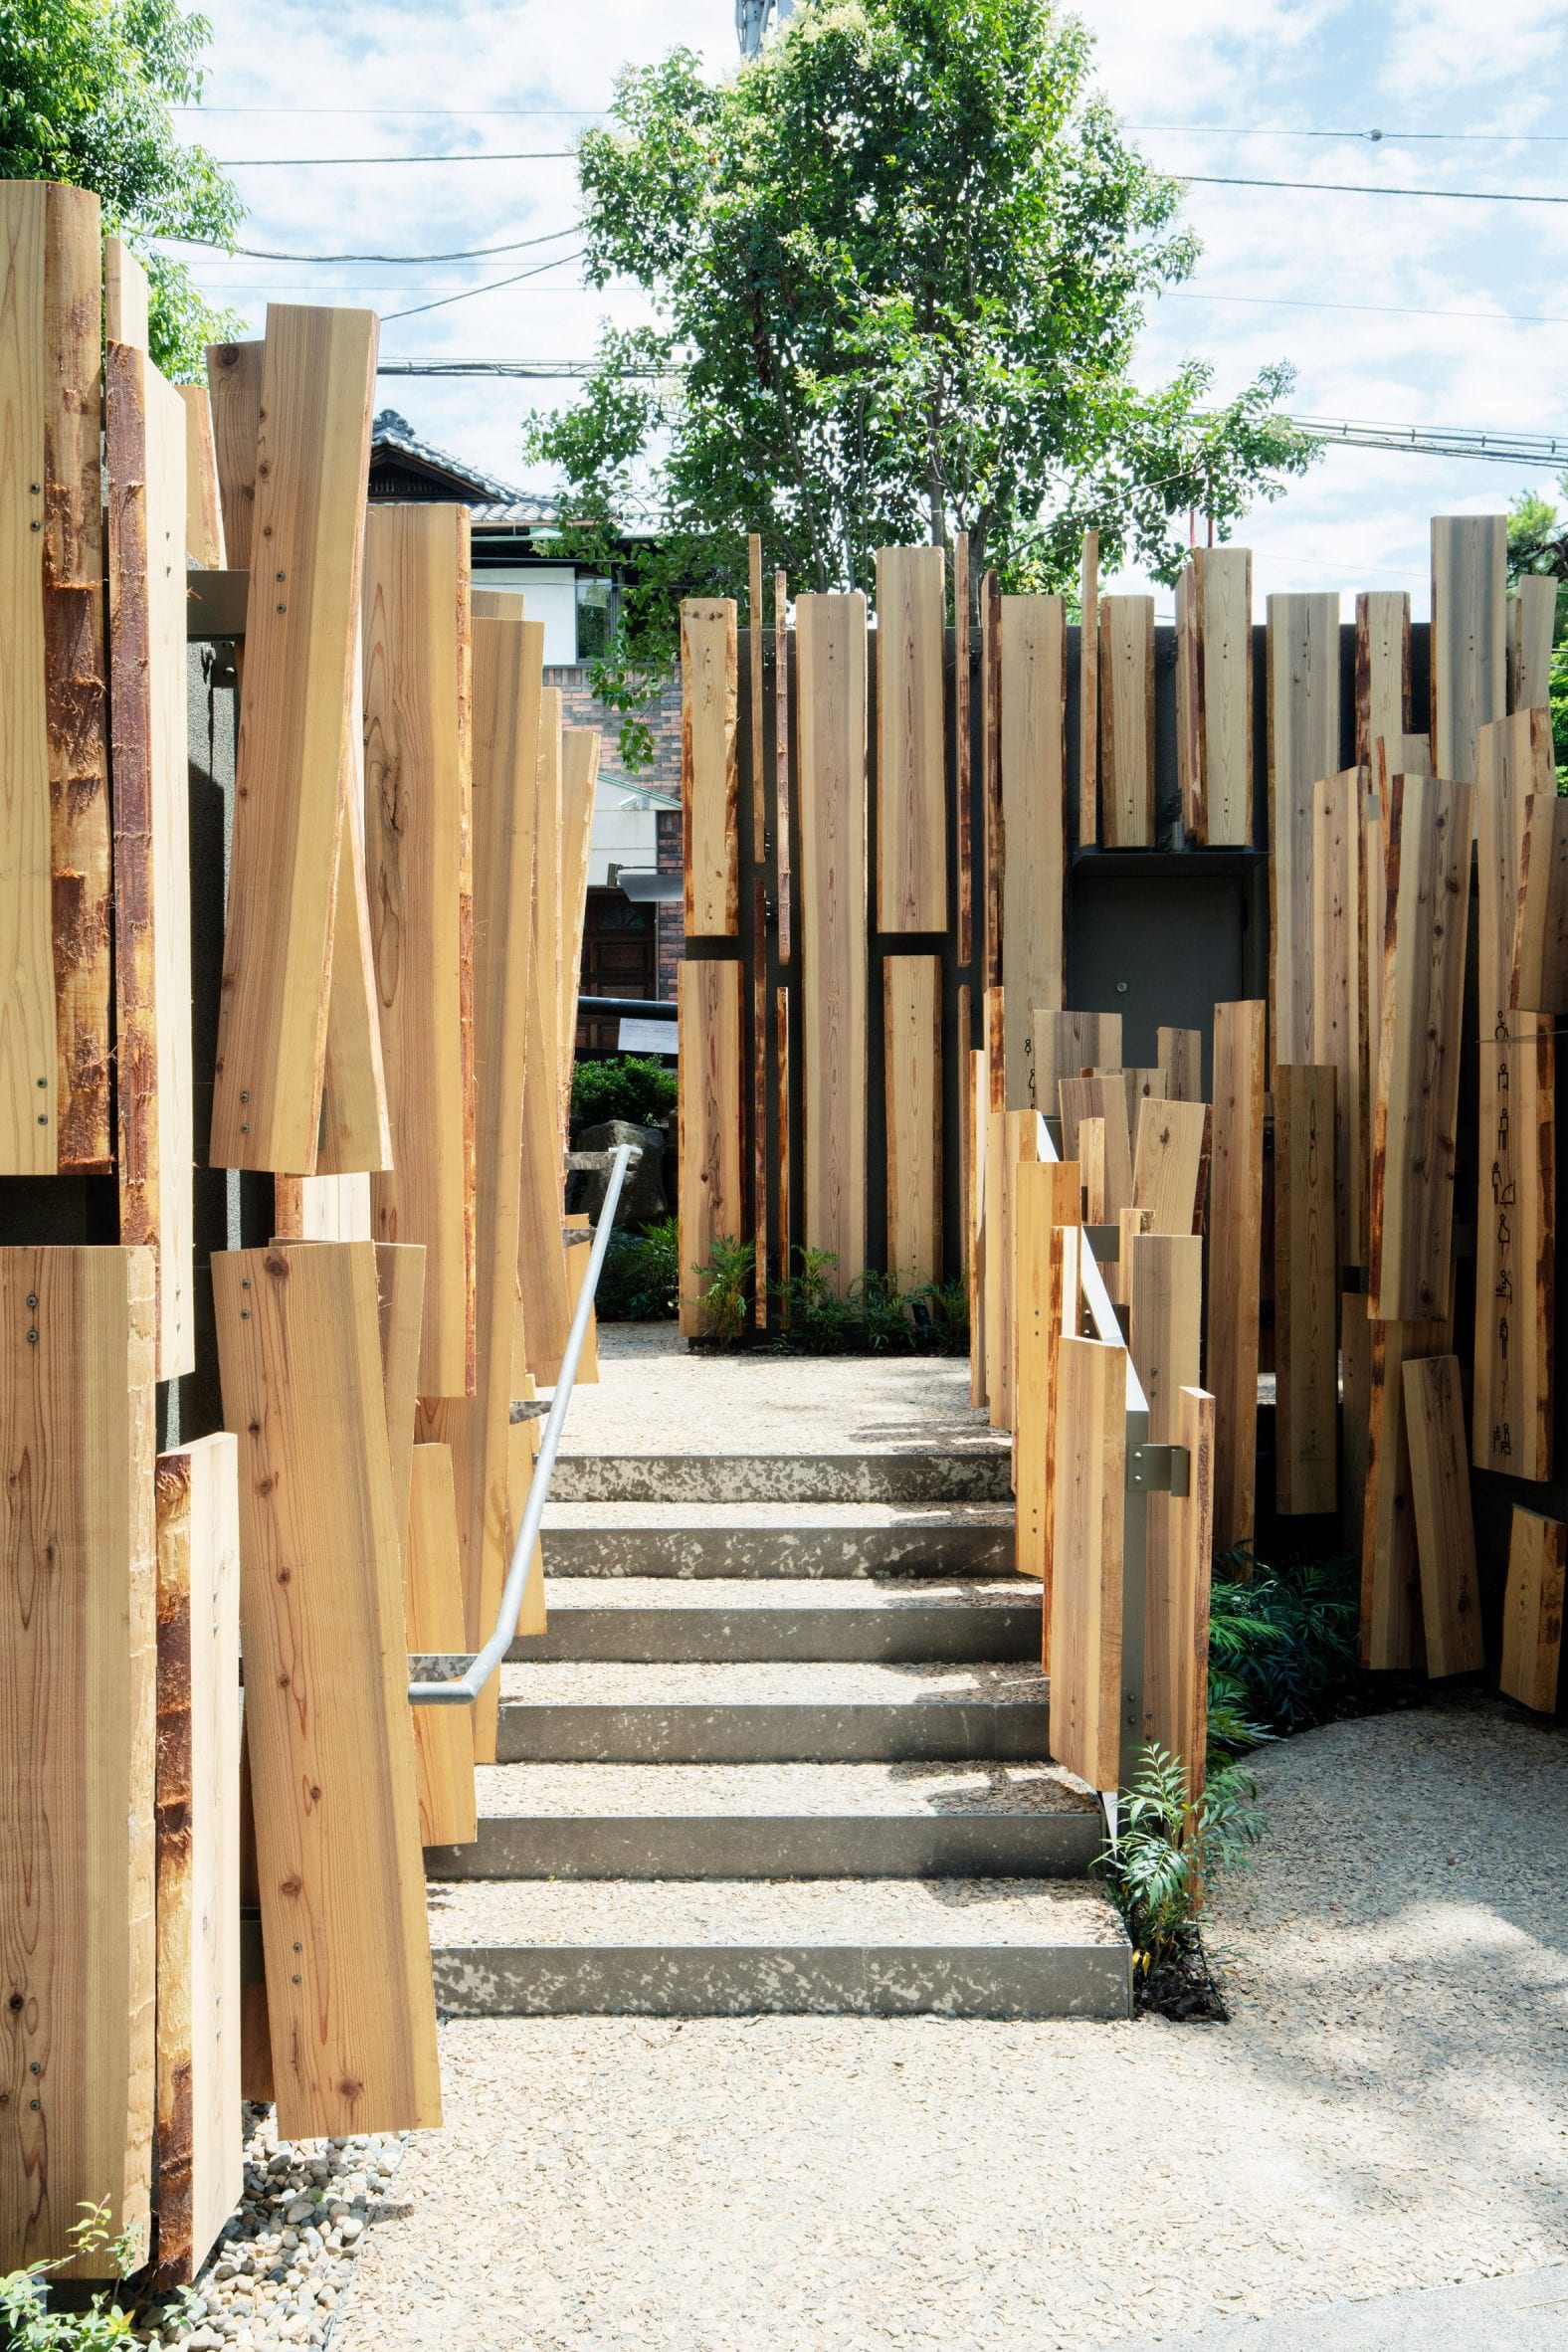 Timber-clad toilet block in Tokyo